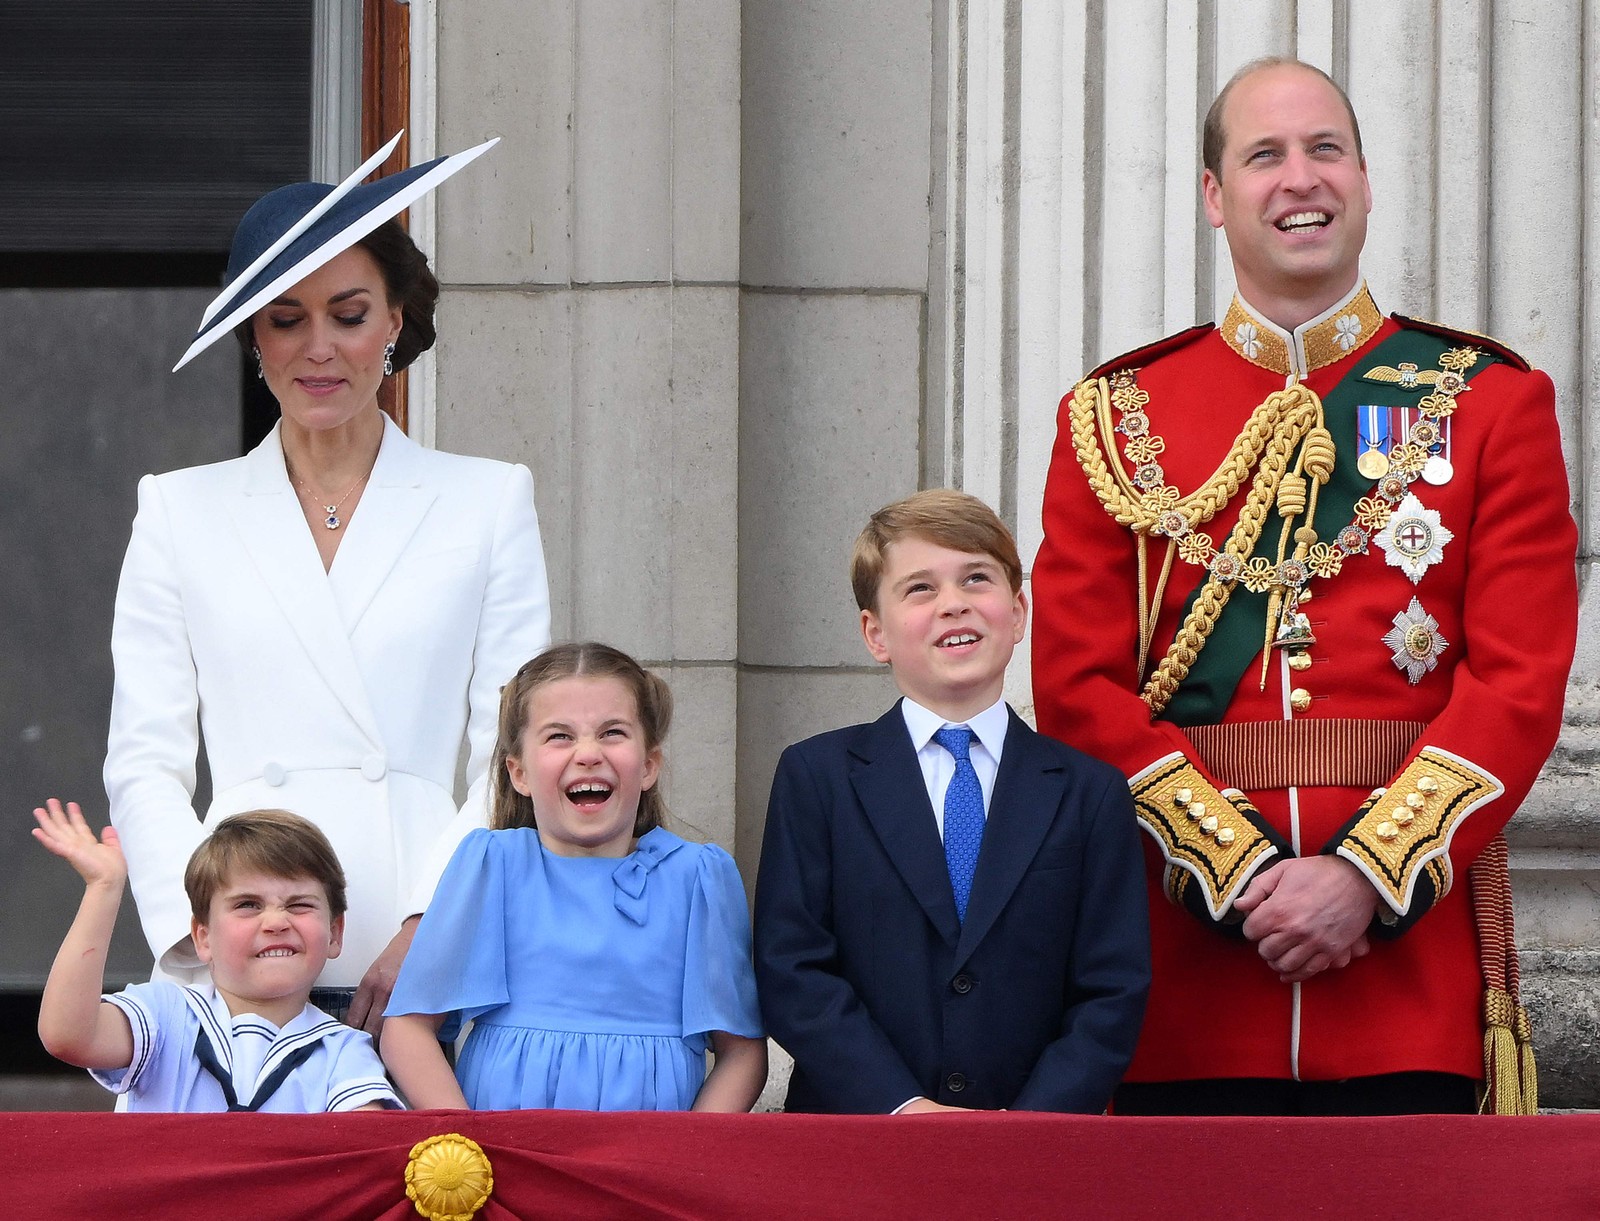 Catherine, Duquesa de Cambridge e o Príncipe Britânico William, duque de Cambridge, estão com seus filhos, o príncipe Louis, a princesa Charlotte e o príncipe George — Foto: DANIEL LEAL / AFP